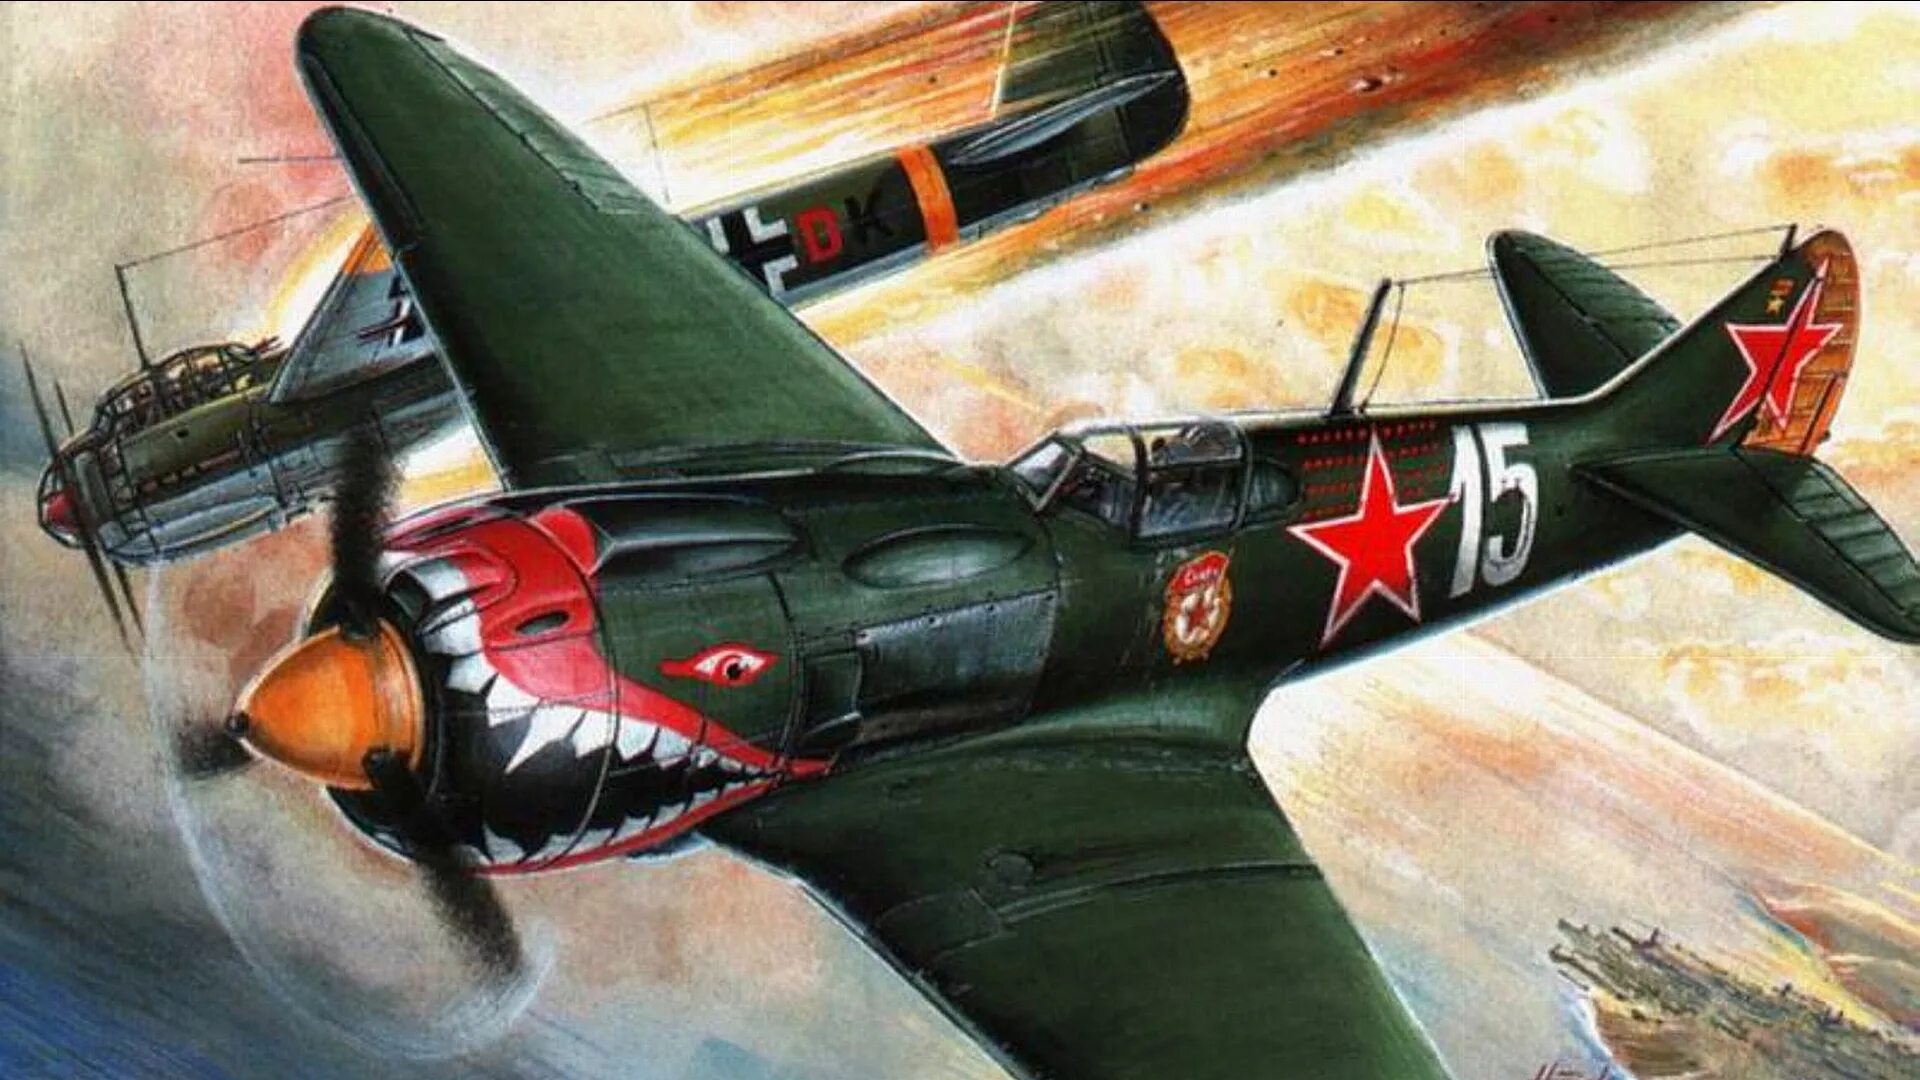 Истребитель Спитфайр второй мировой войны 1941-1945. Ла-5 Костылев. Советские военные самолеты второй мировой войны бомбардировщик. Советский истребитель второй мировой